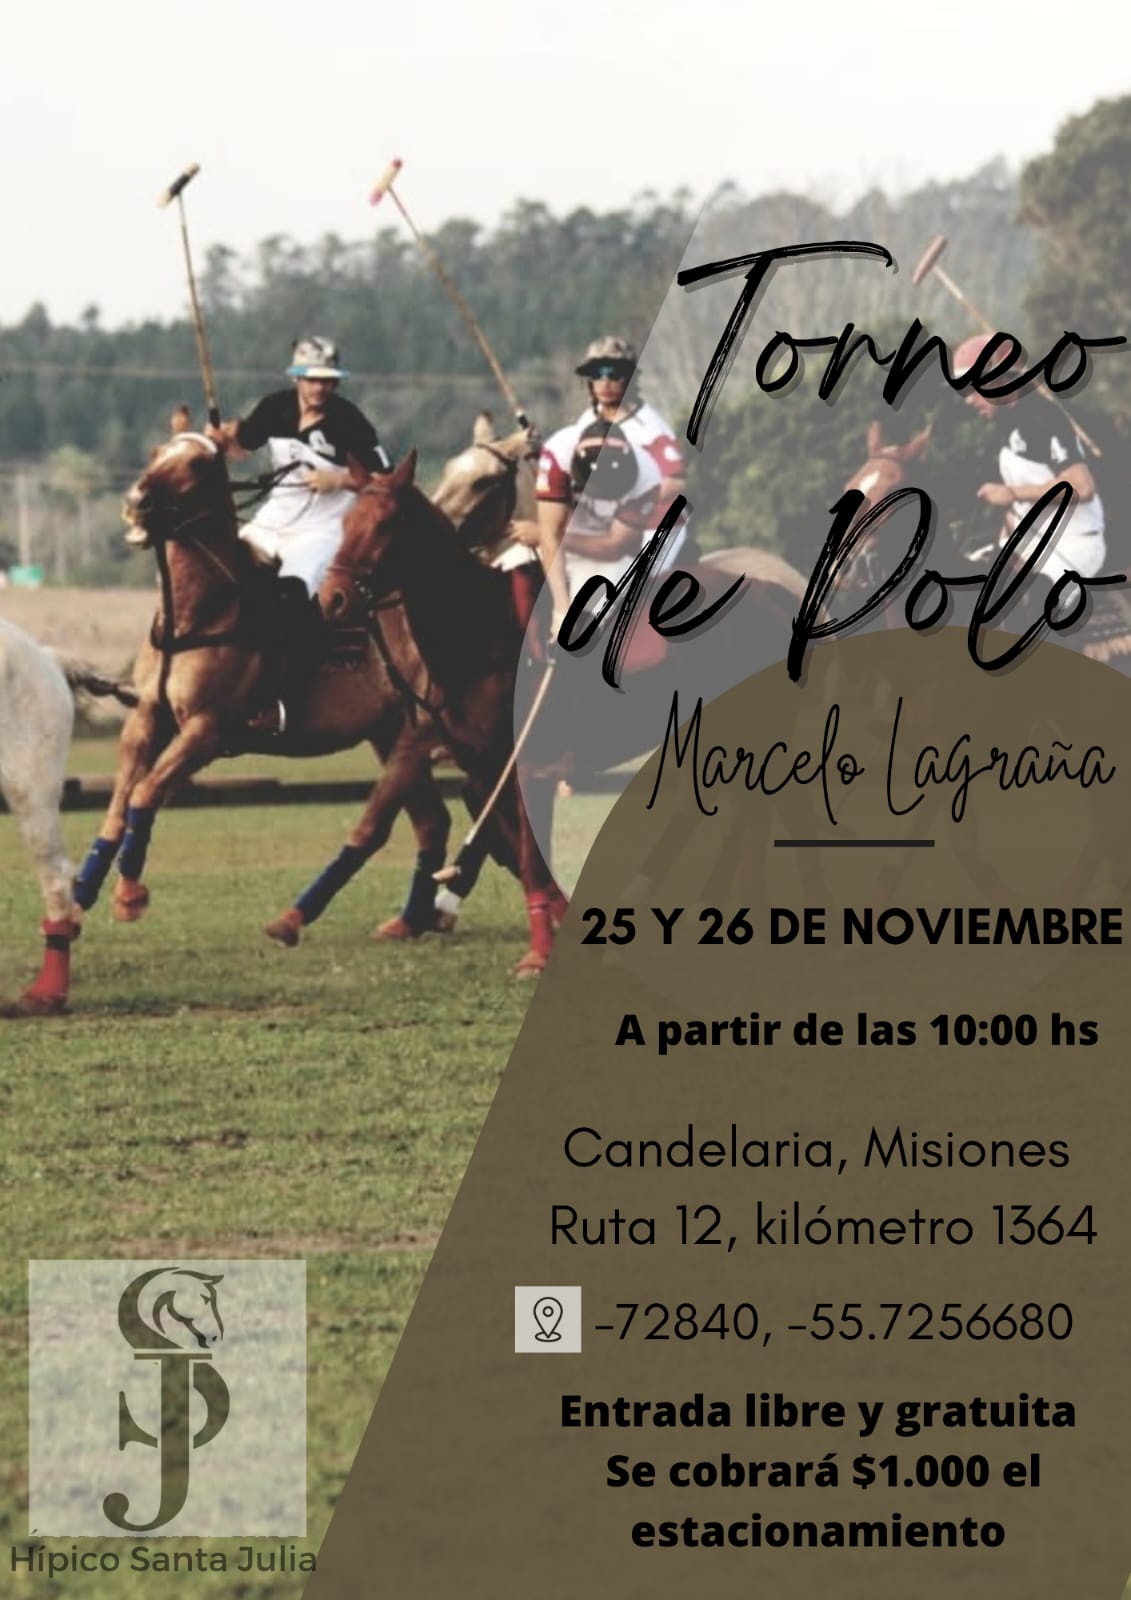 Candelaria recibirá este fin de semana al Torneo de Polo "Marcelo Lagraña"